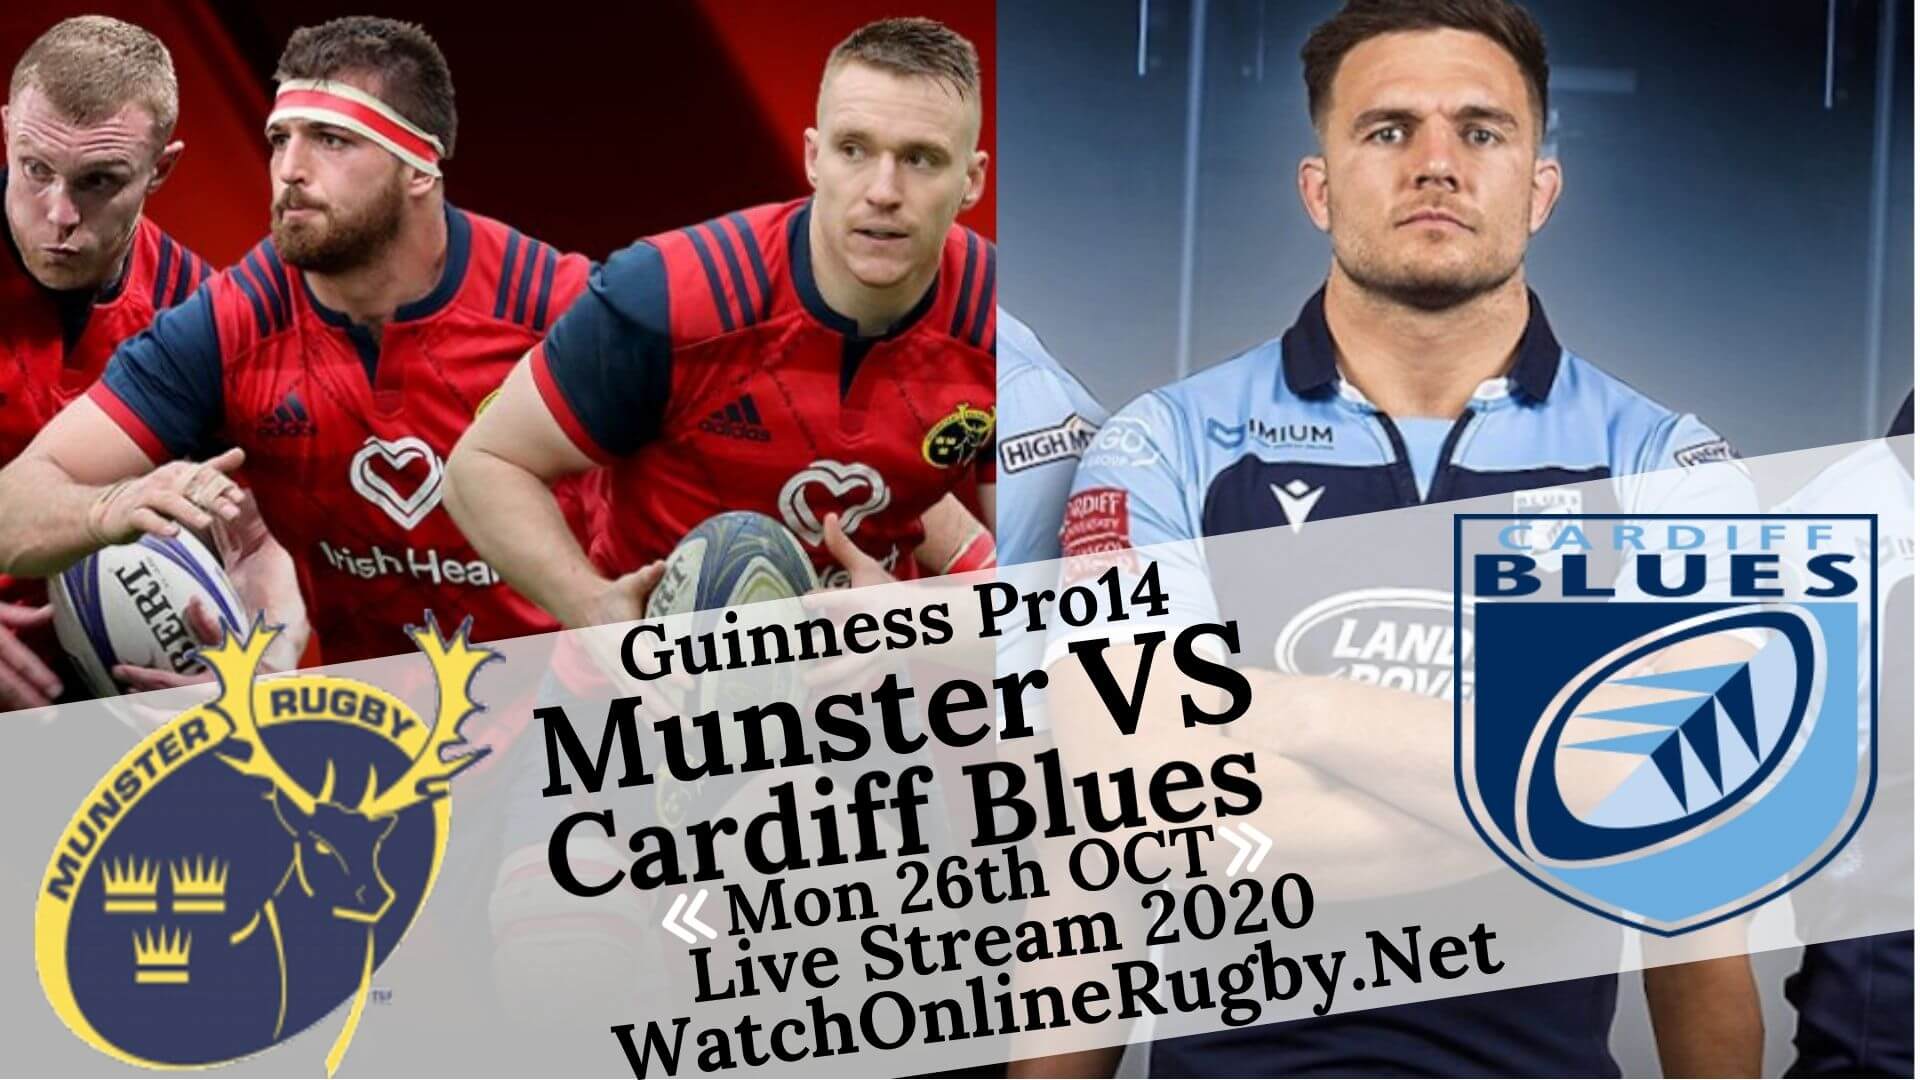 Munster Vs Cardiff Blues Guinness PRO14 2020